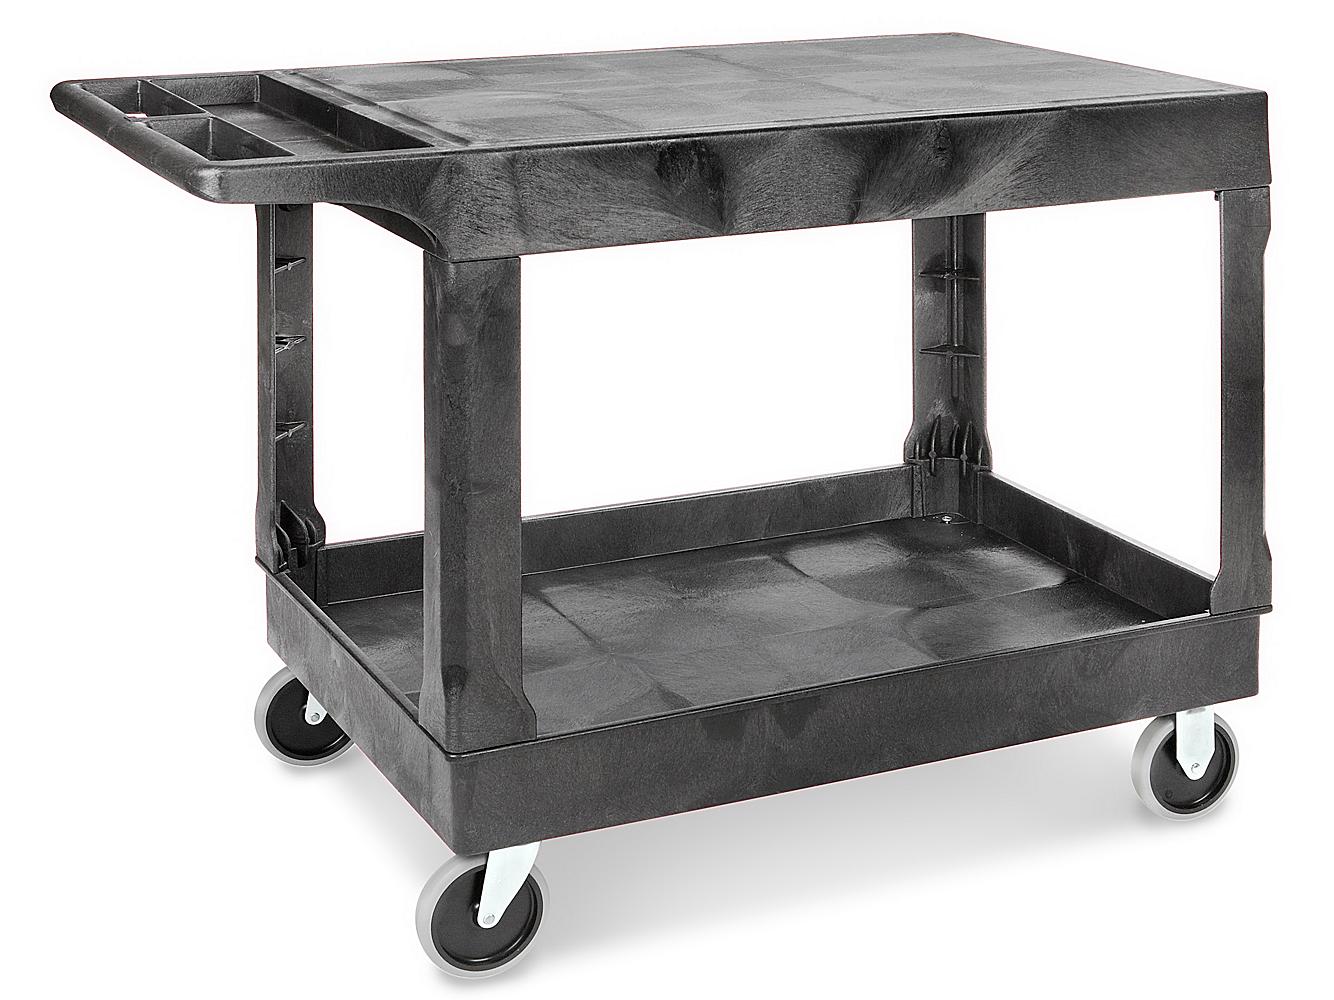 Uline Flat Shelf Utility Cart - 44 x 25 x 33, Black